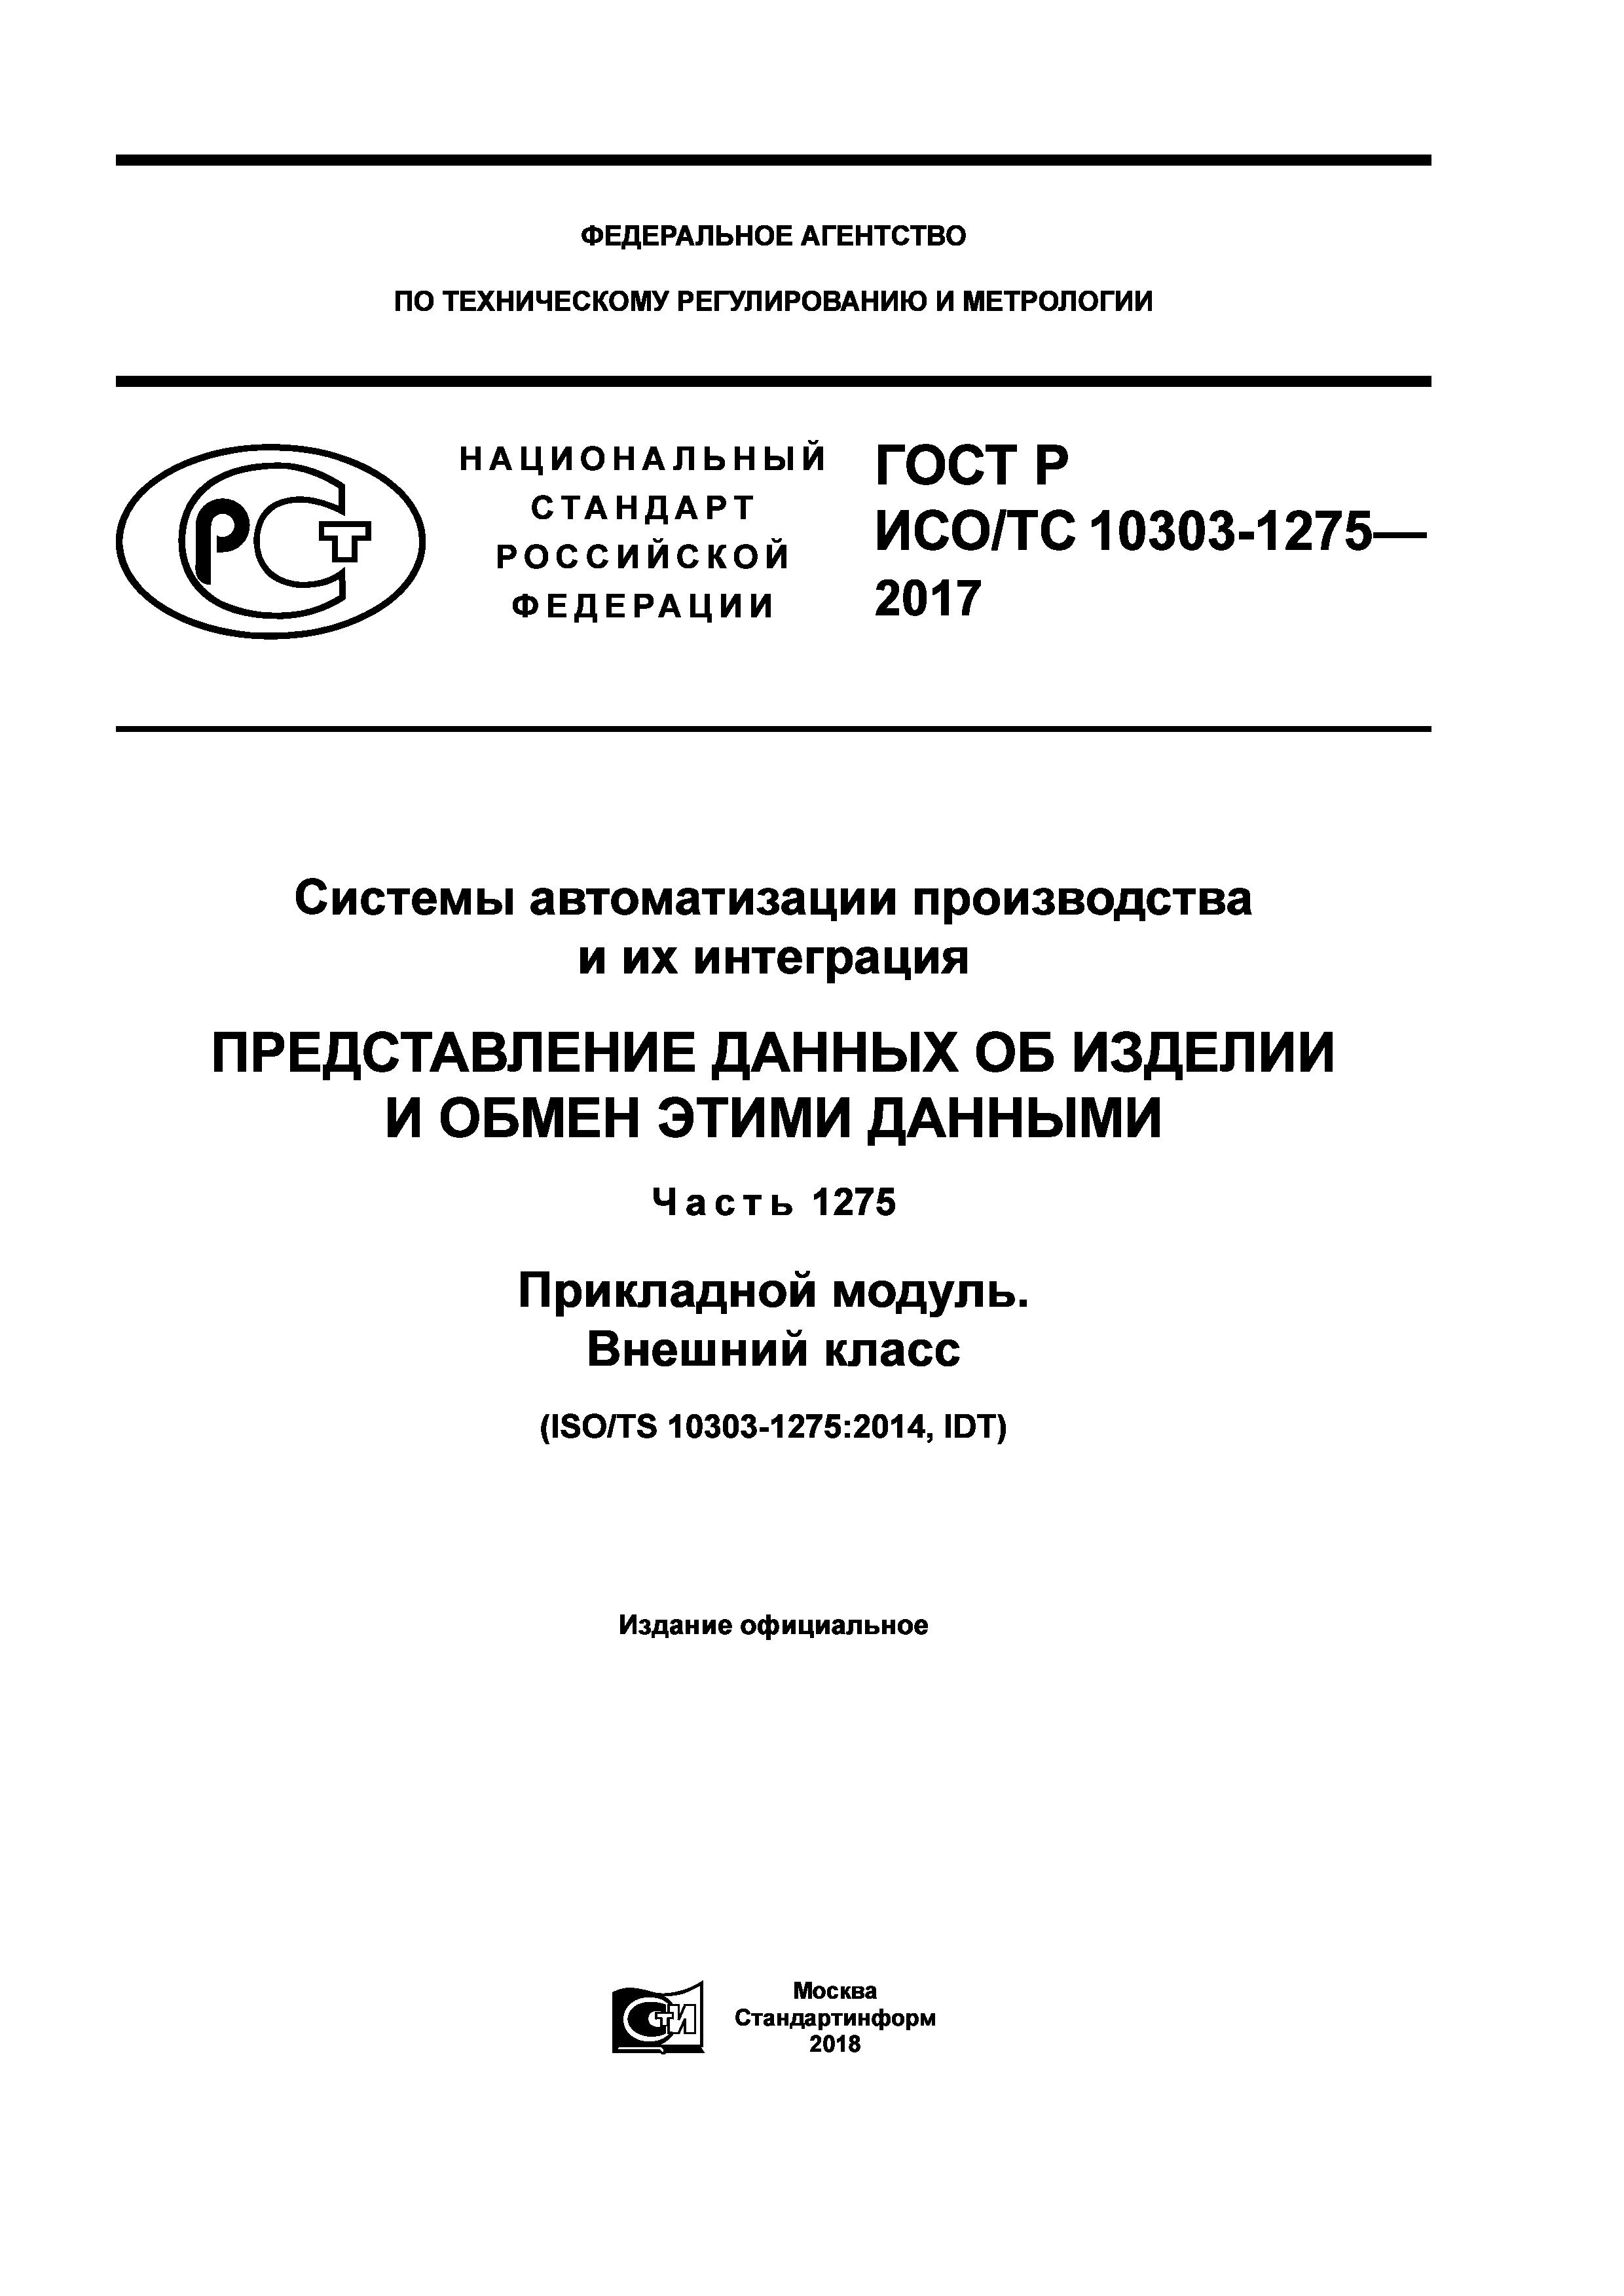 ГОСТ Р ИСО/ТС 10303-1275-2017